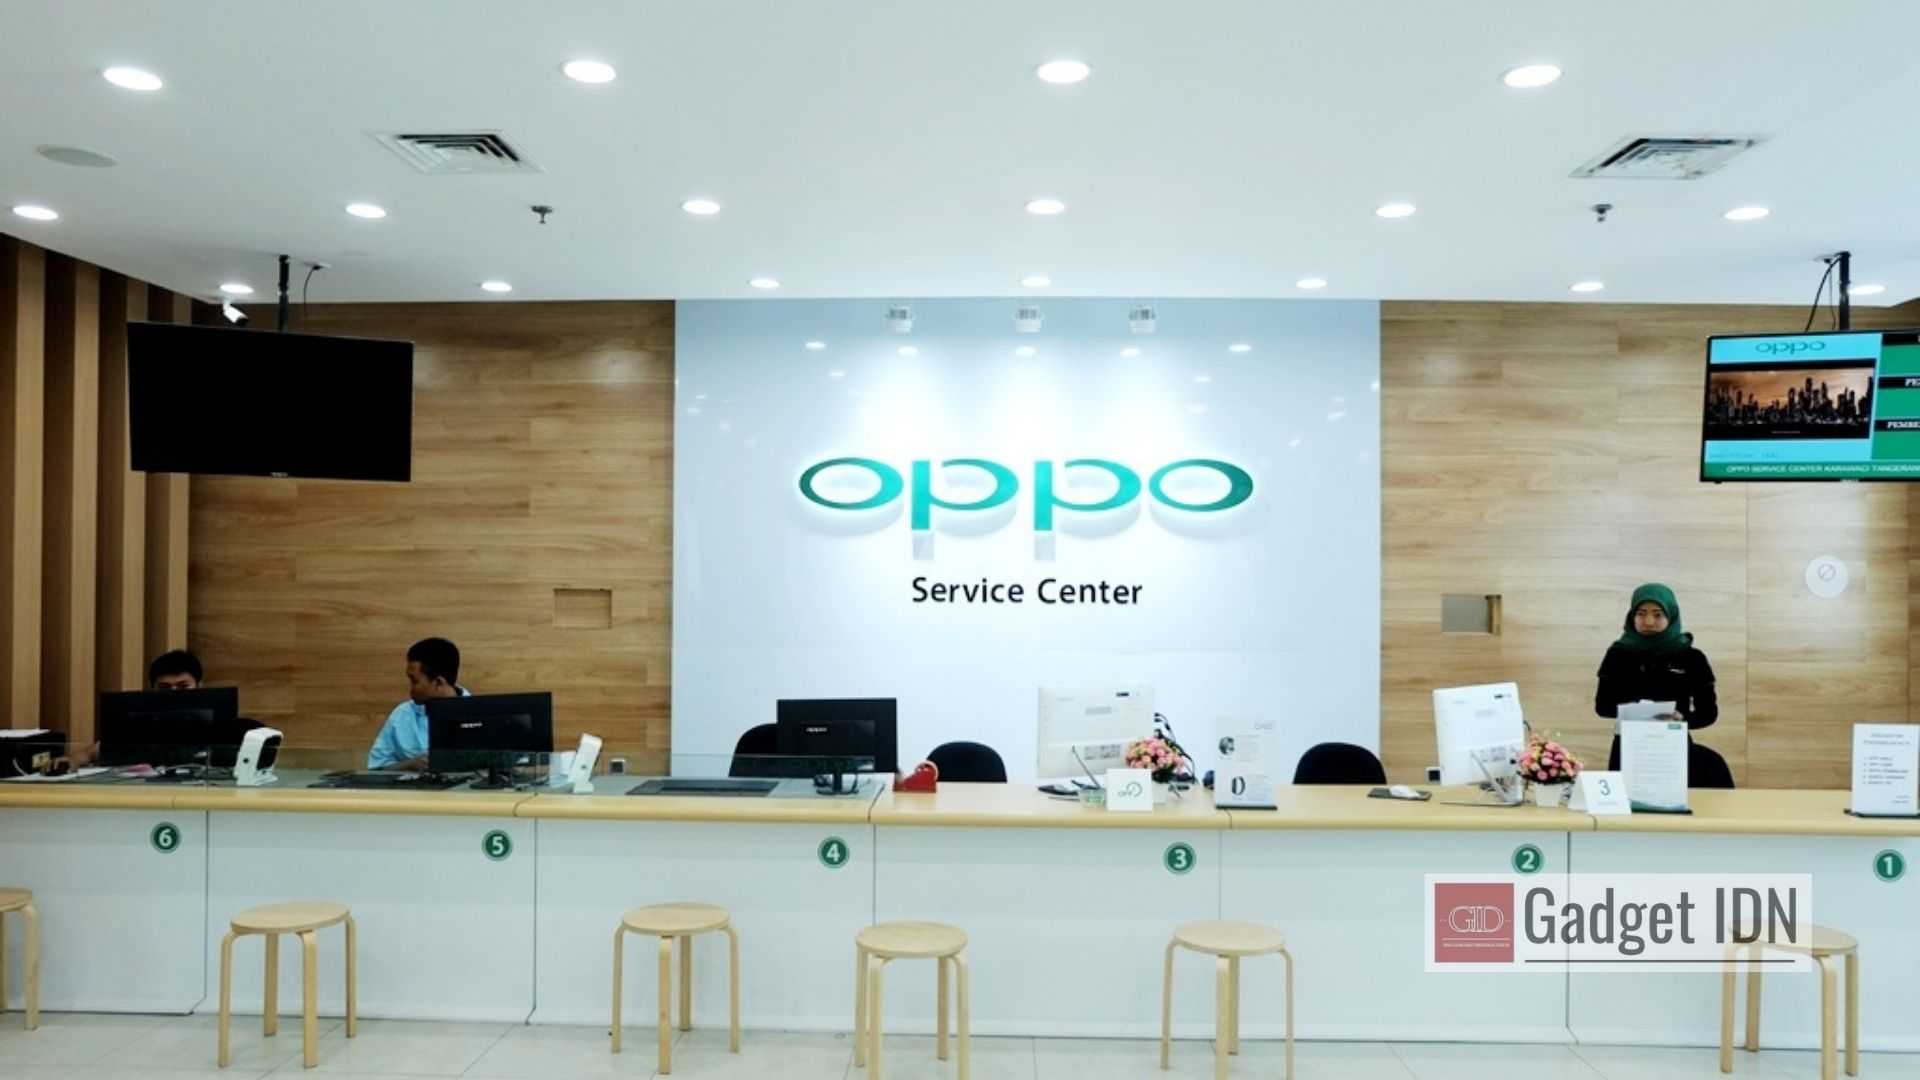 Daftar Service Center OPPO Indonesia Terbaru dan Terlengkap